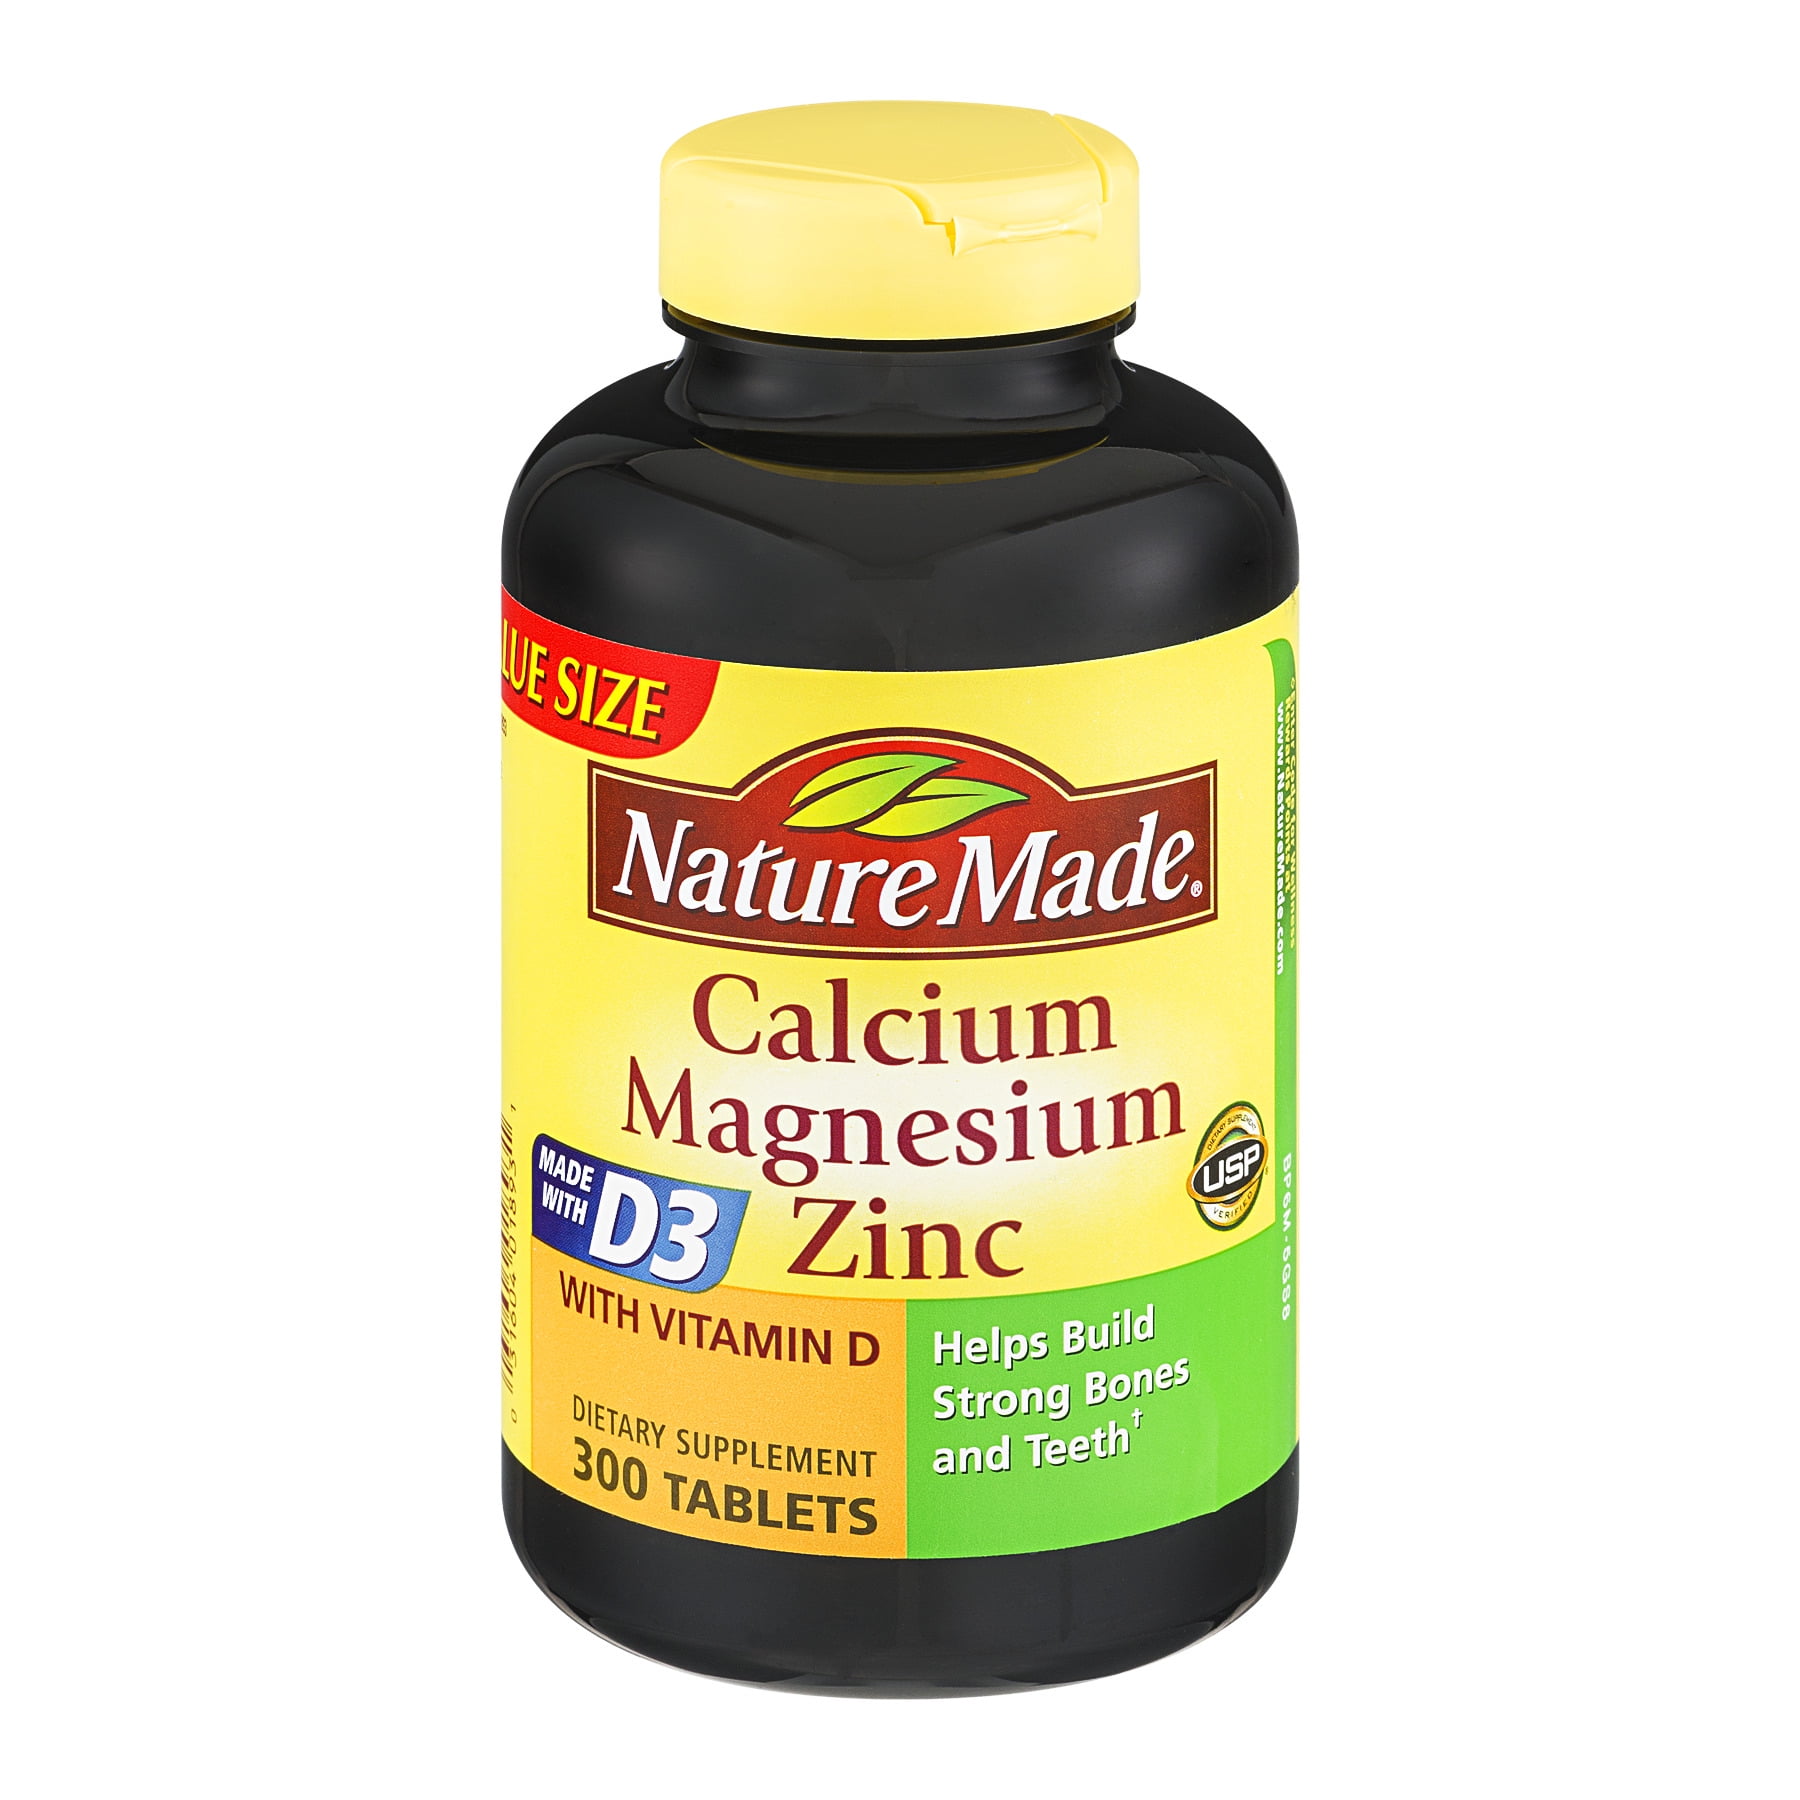 Nature Made Calcium Magnesium Zinc Vitamin D Tablets 300 Ct Walmartcom